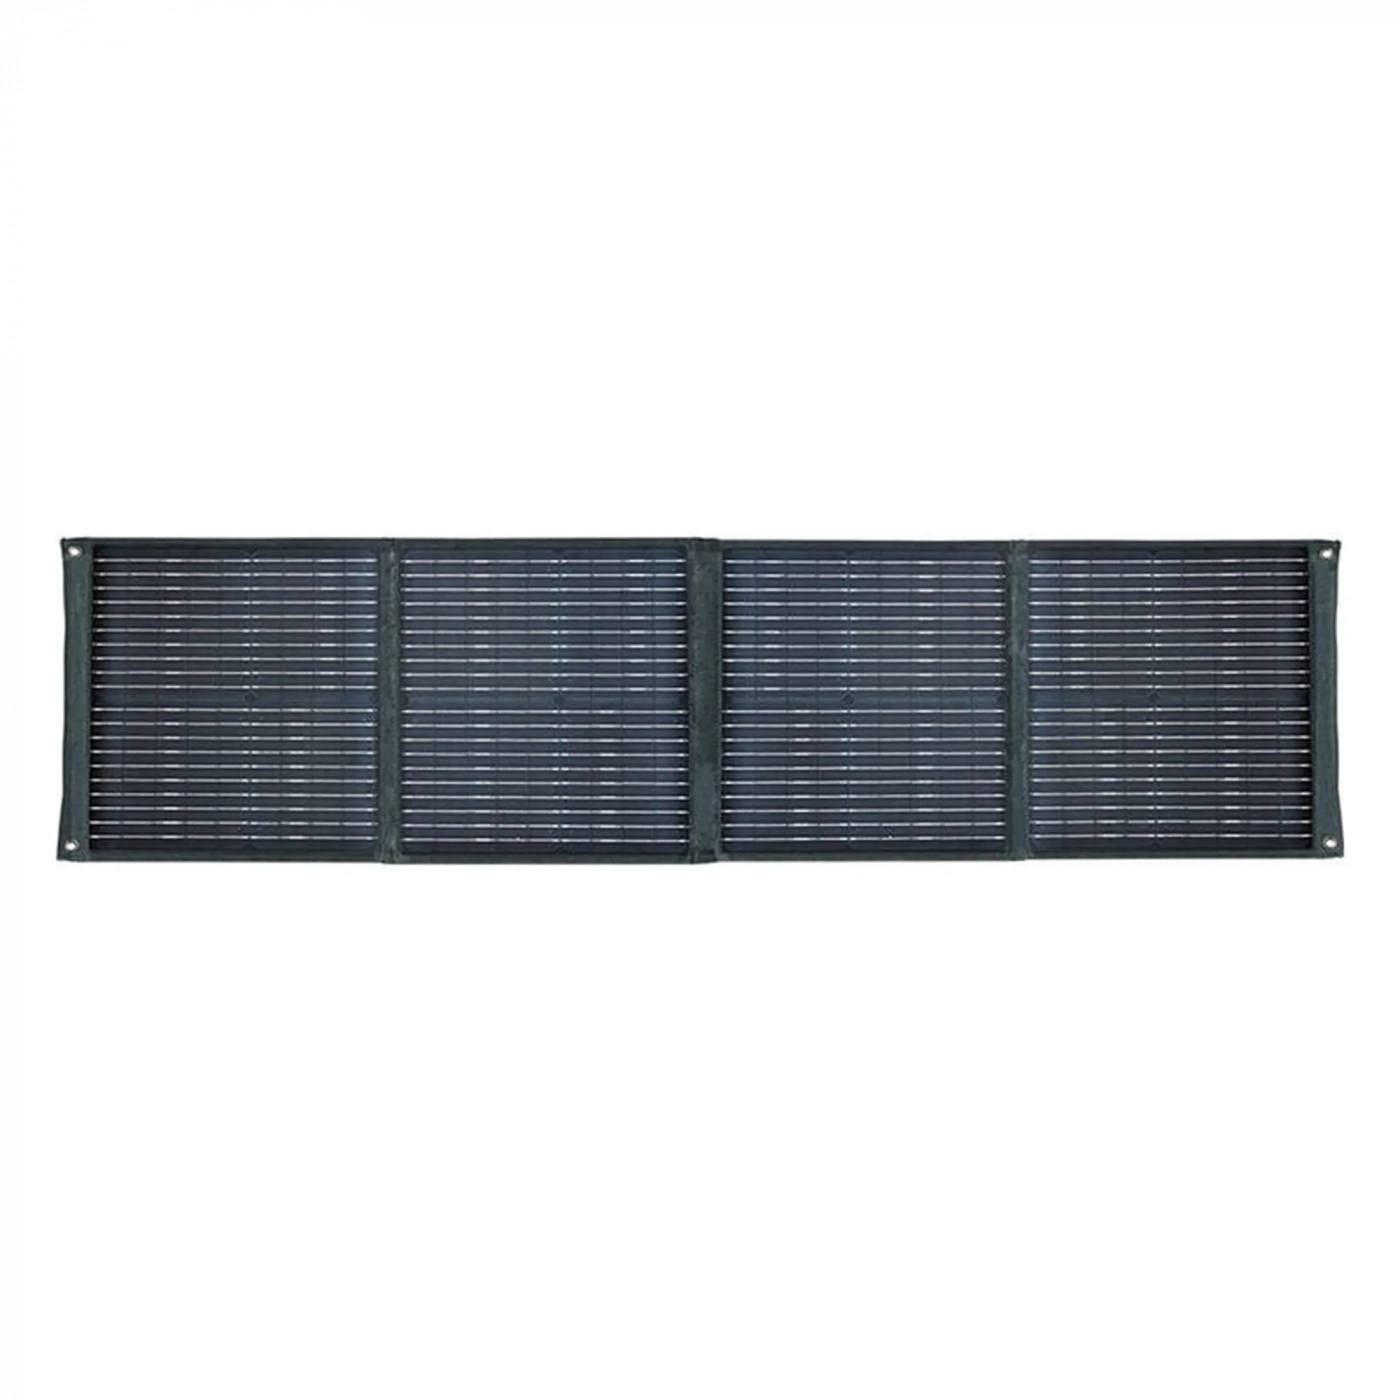 Купить Солнечная панель Baseus Energy Stack Solar Panel 100W Cold Green - фото 2